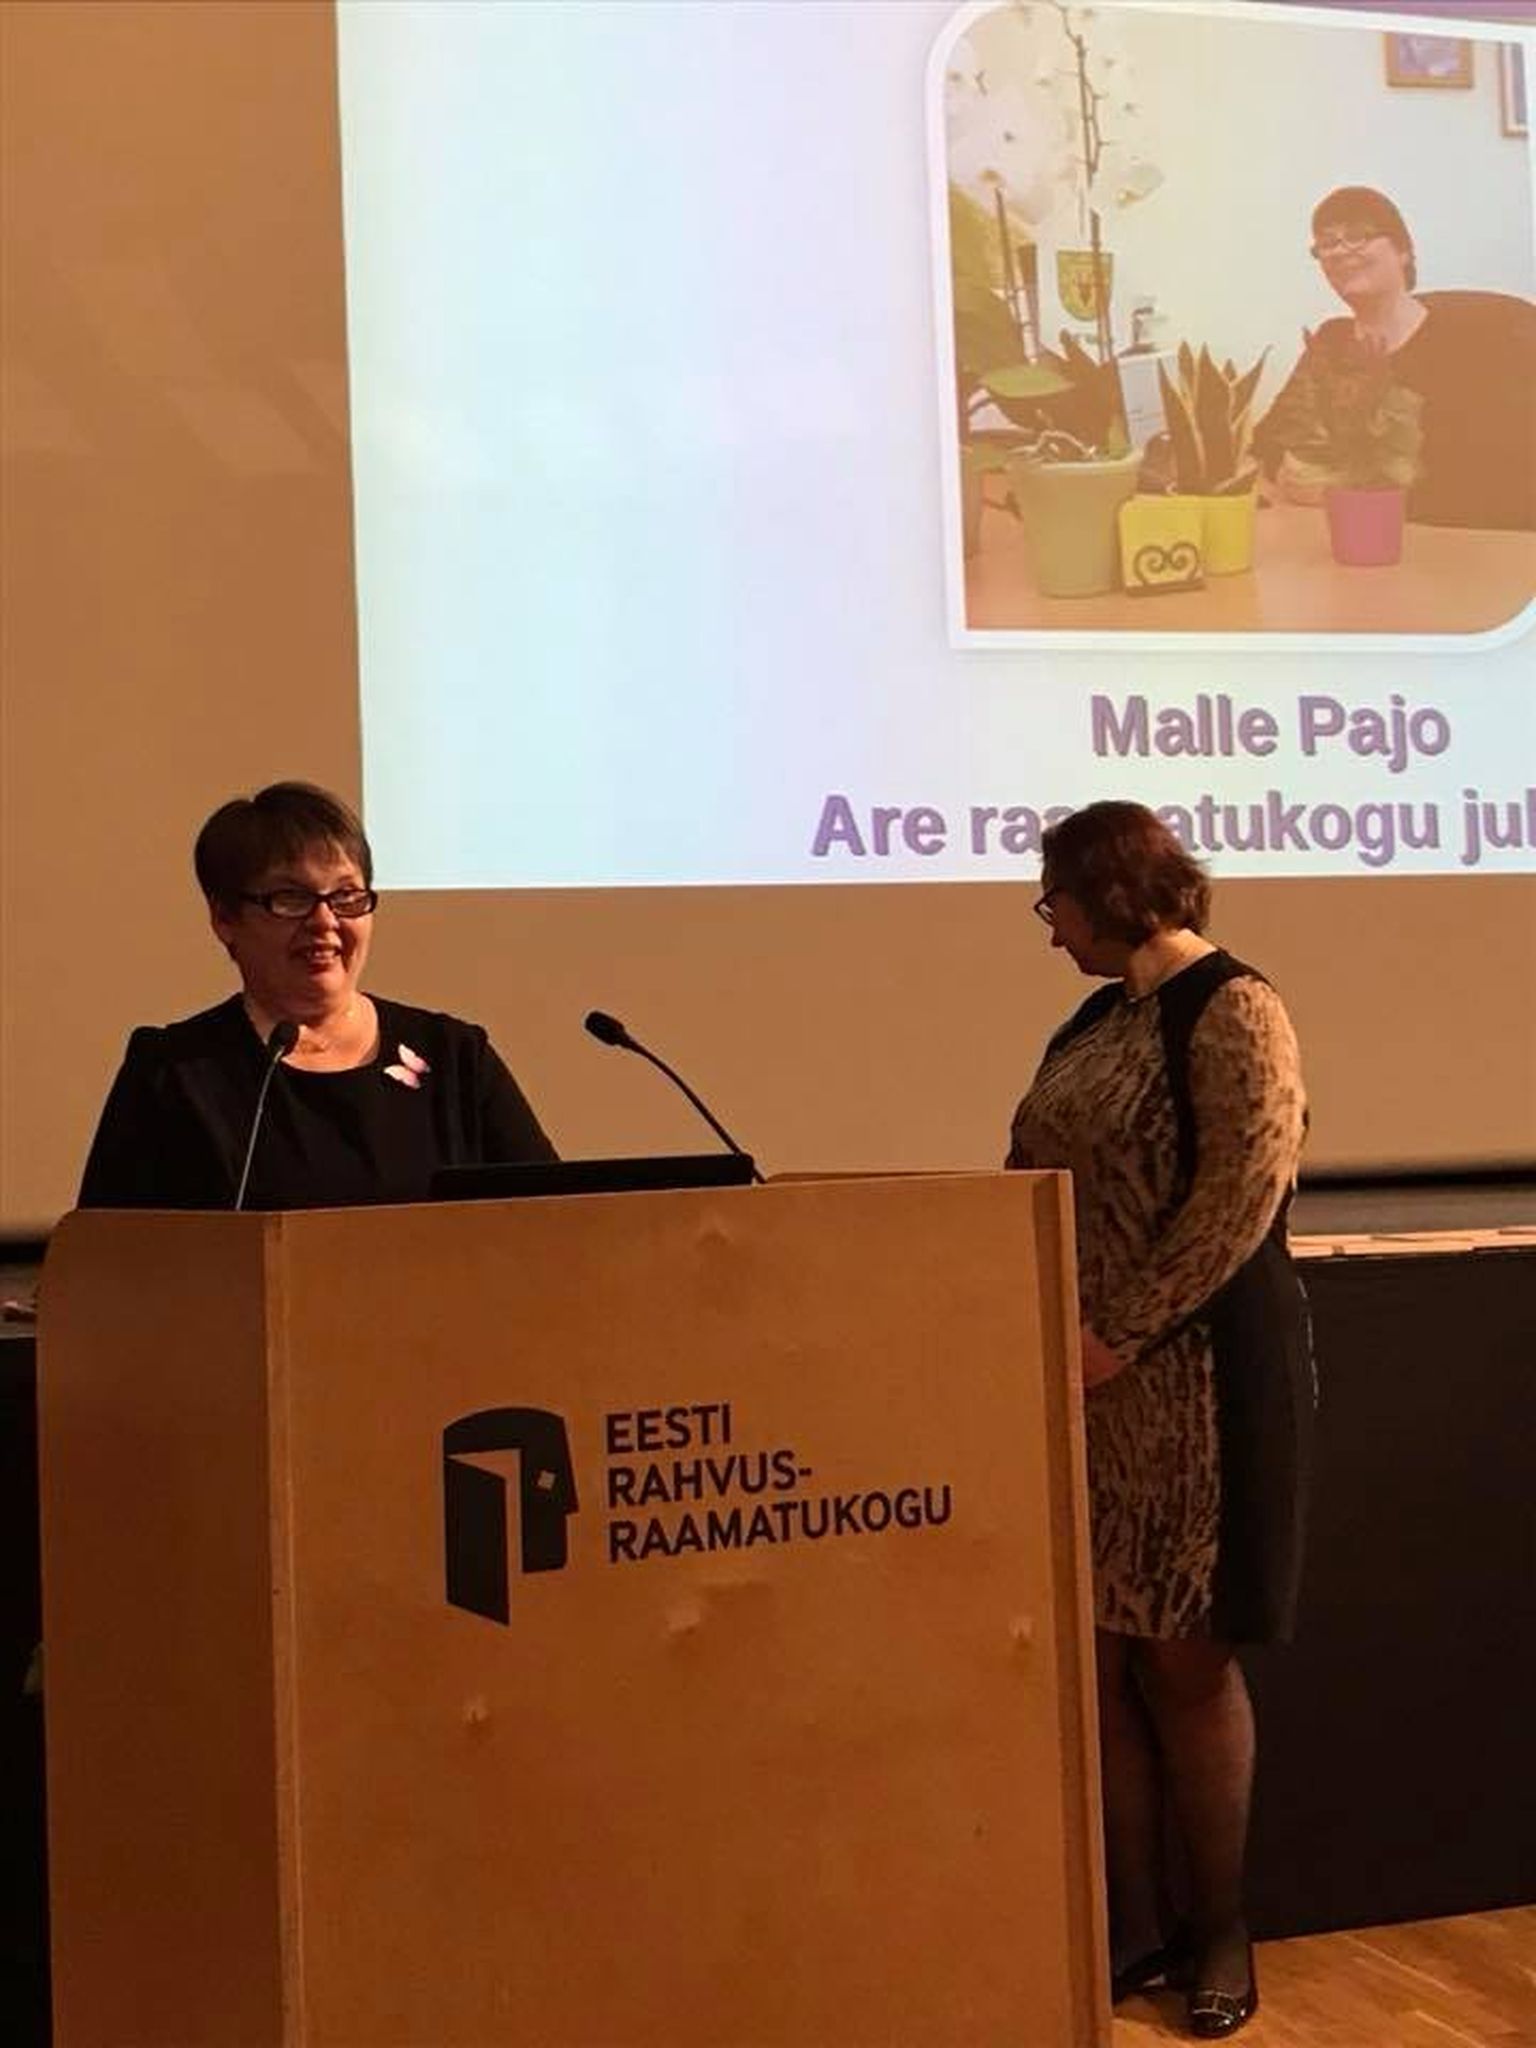 Eesti raamatukoguhoidjate ühing nimetas aasta maaraamatukoguhoidjaks Are raamatukogu juhataja Malle Pajo, kes seisab selle eest, et parimal viisil talletada kogukonnaga ühisloomes ja veebipõhiselt kohamälu.